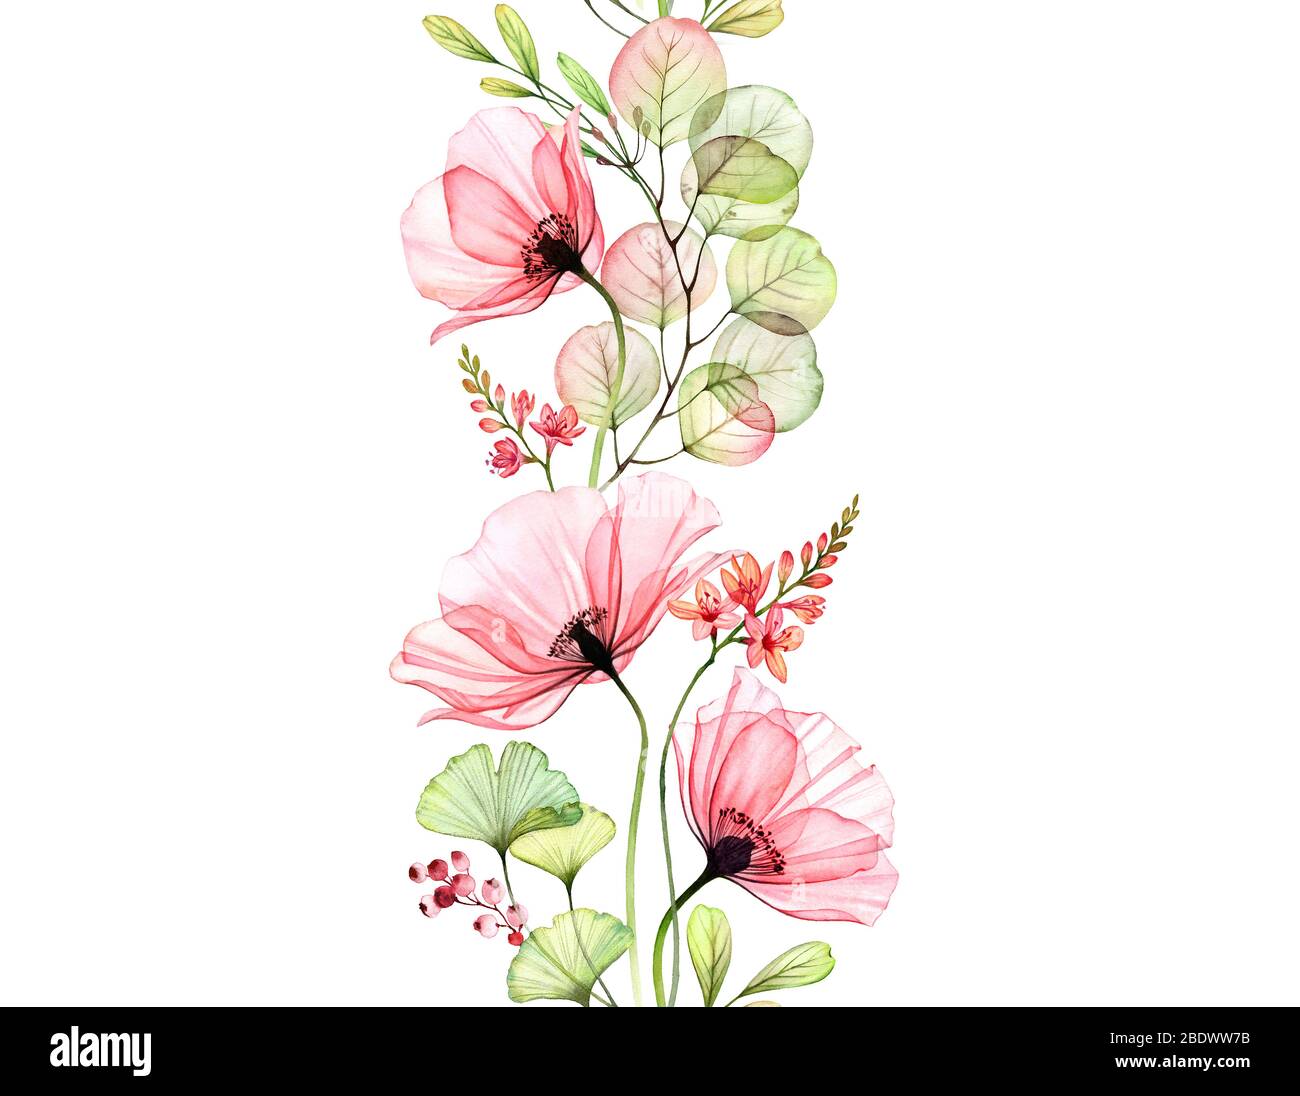 Aquarell Poppy nahtlose Borte. Vertikales sich wiederholendes Muster. Abstrakte rosa Blüten mit Blättern und fresia Zweige auf weiß. Botanische Illustration Stockfoto